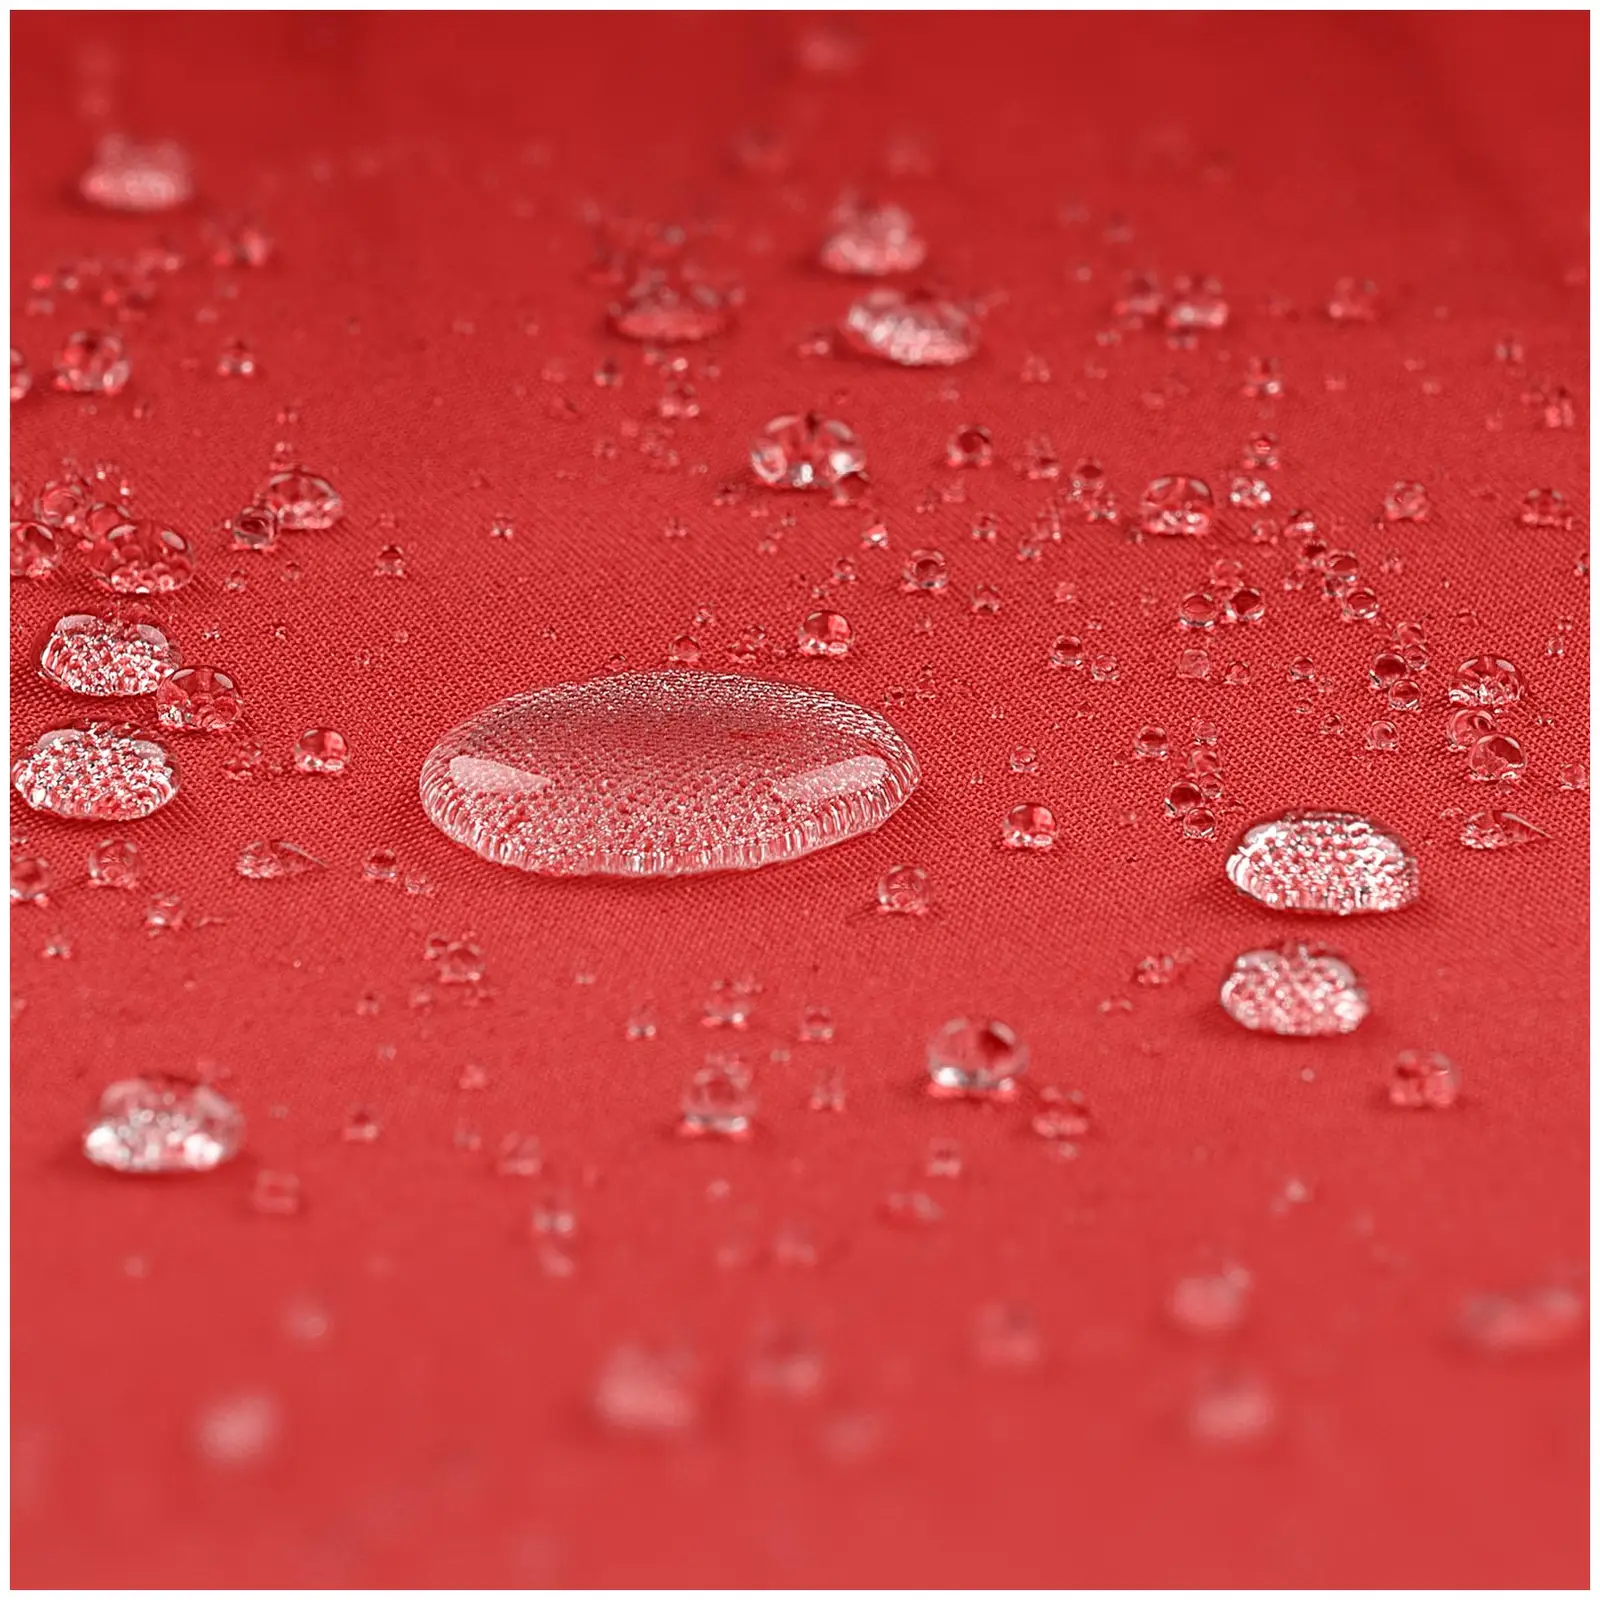 Stort parasoll - rött - sexkantigt - Ø 300 cm - fällbart